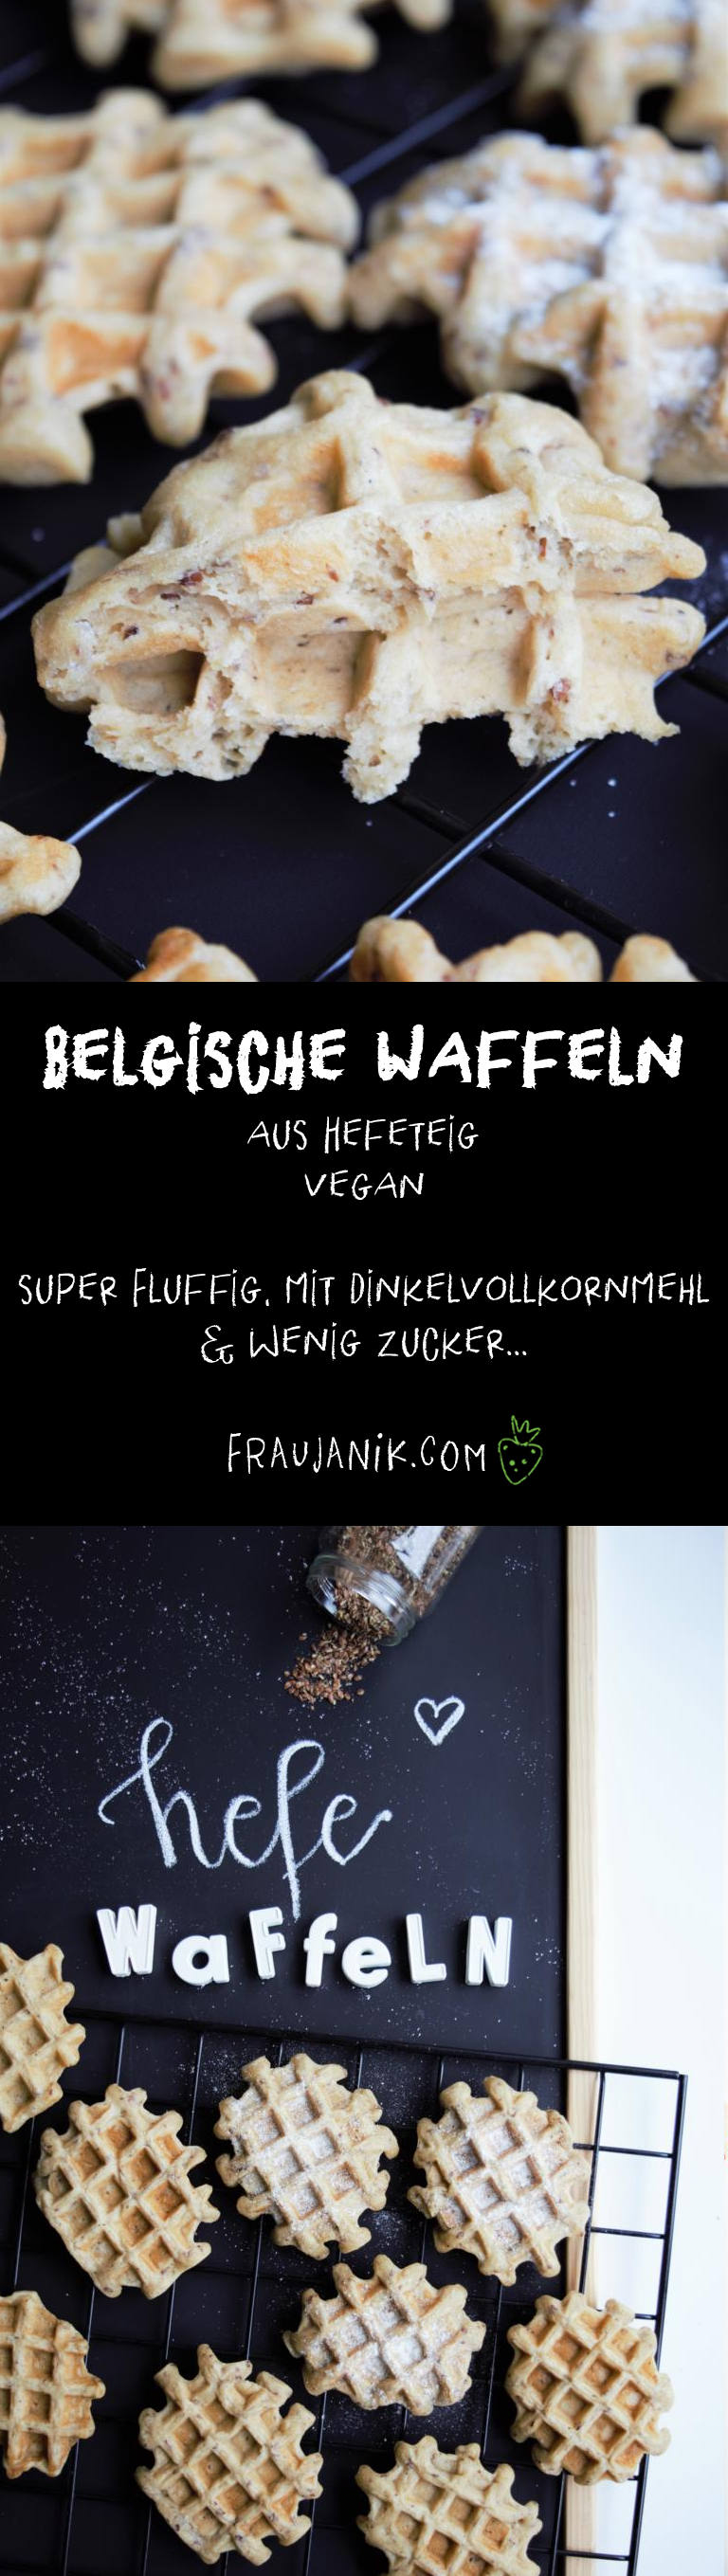 Waffeln Hefe, vegan, Belgische Waffeln